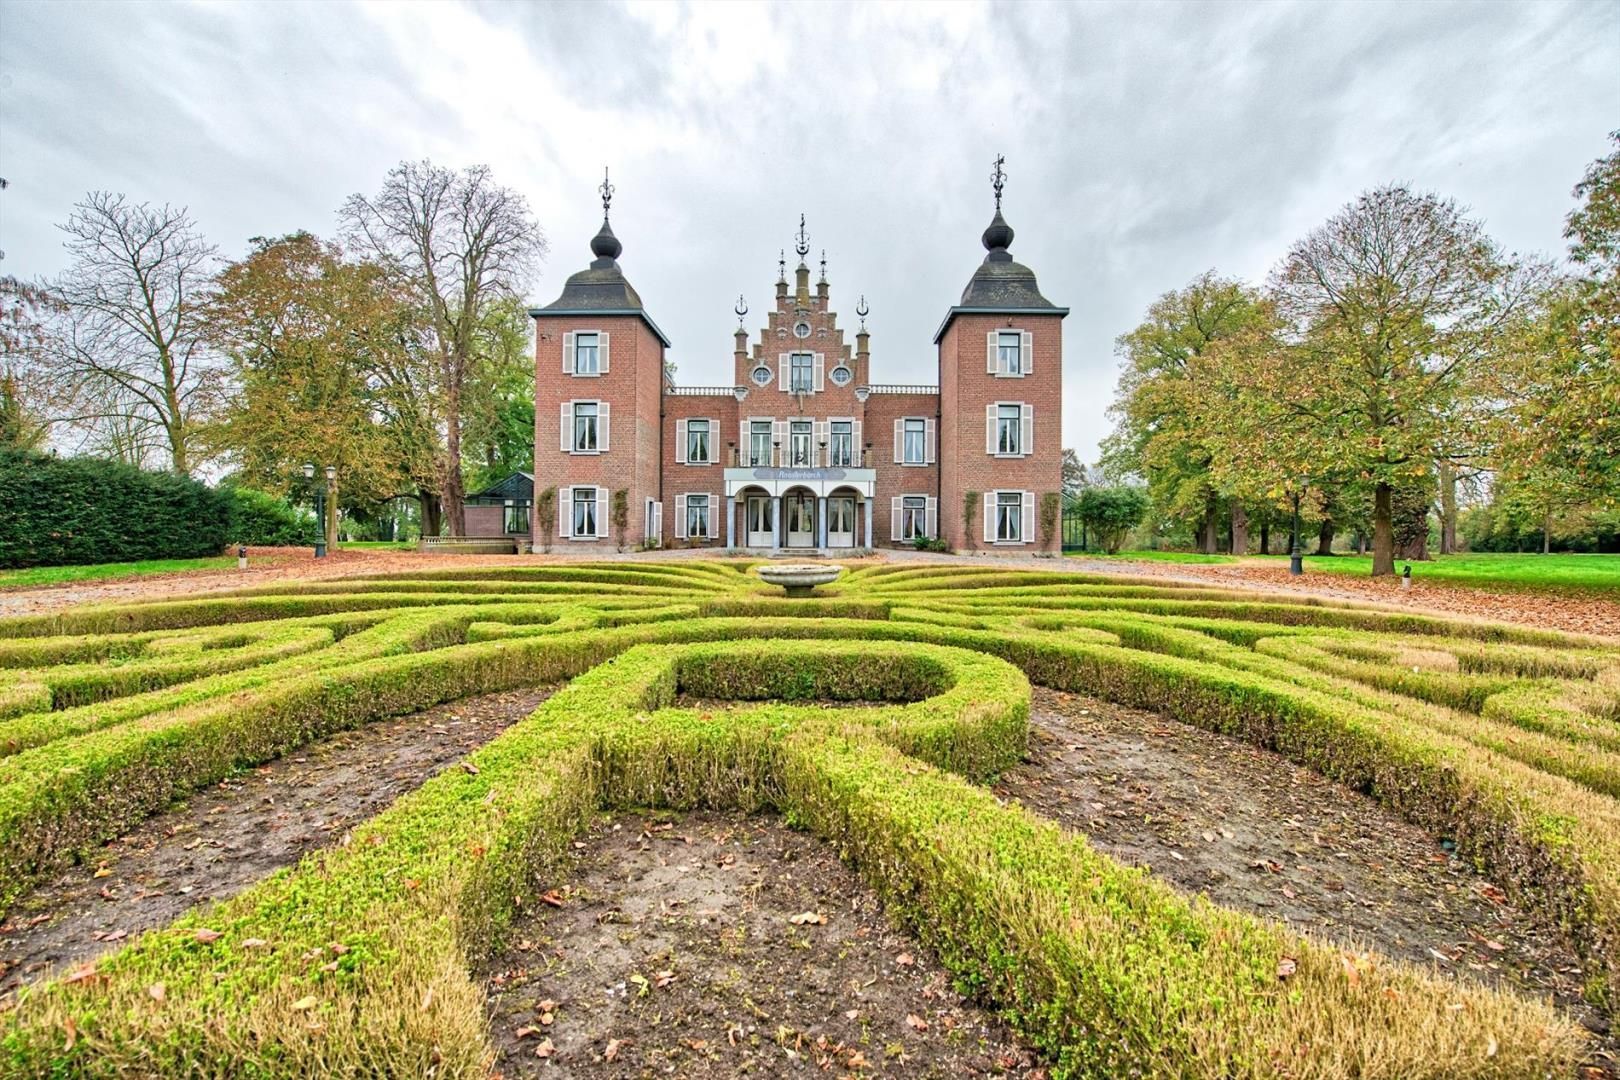 Portal Inmobiliario de Lujo en Roosteren, presenta castillo exclusivo venta en Países Bajos, inmueble histórico para comprar y propiedad lujosa en venta en Limburgo.